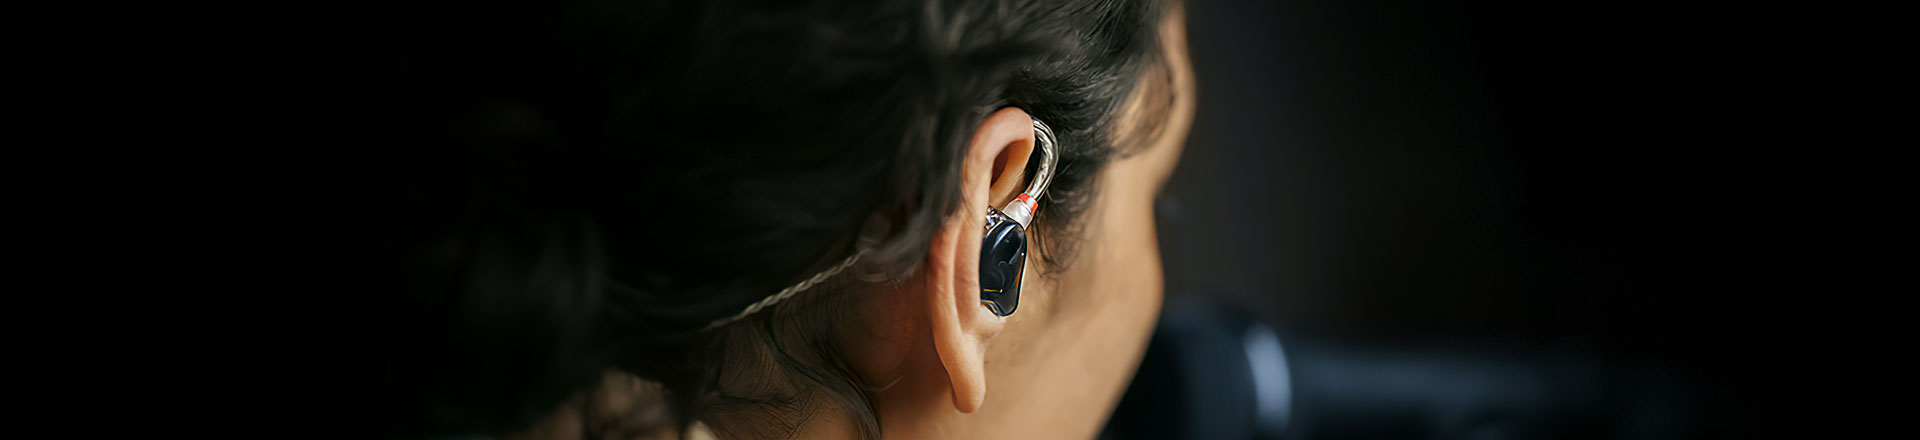 Fischer Amps i Sennheiser wprowadzają pierwsze niestandardowe słuchawki douszne z technologią TrueResponse 